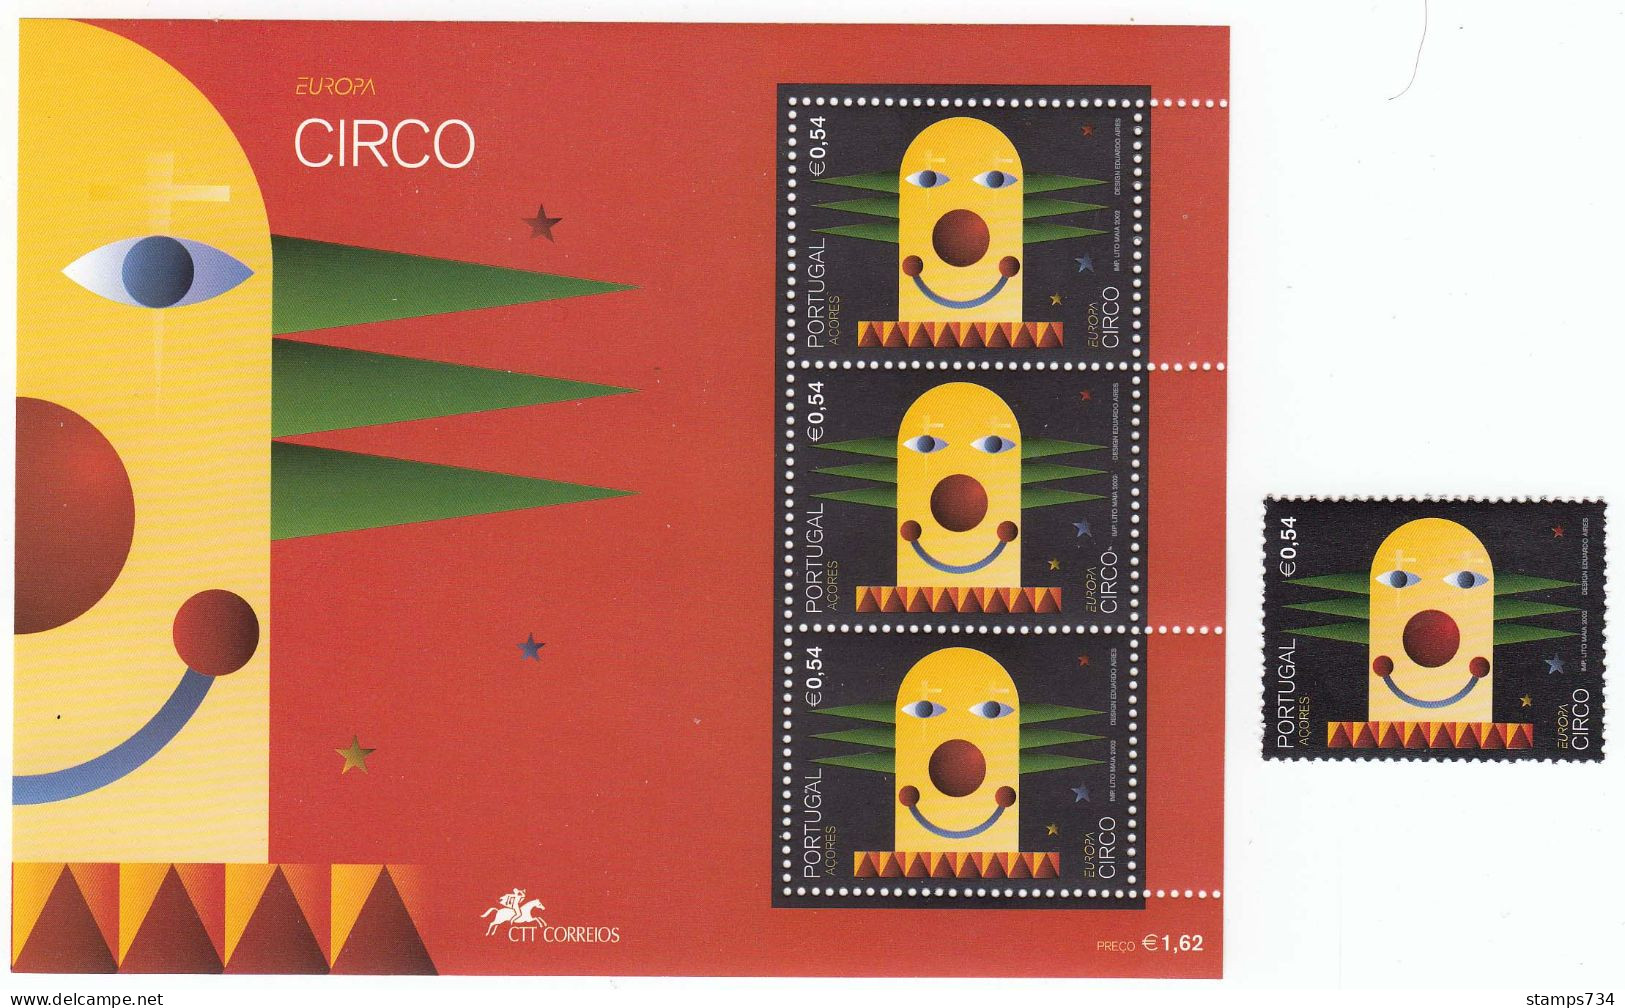 Acores 2002 - EUROPA: Cirque, Mi-Nr. 483+Block 23, MNH** - Azores